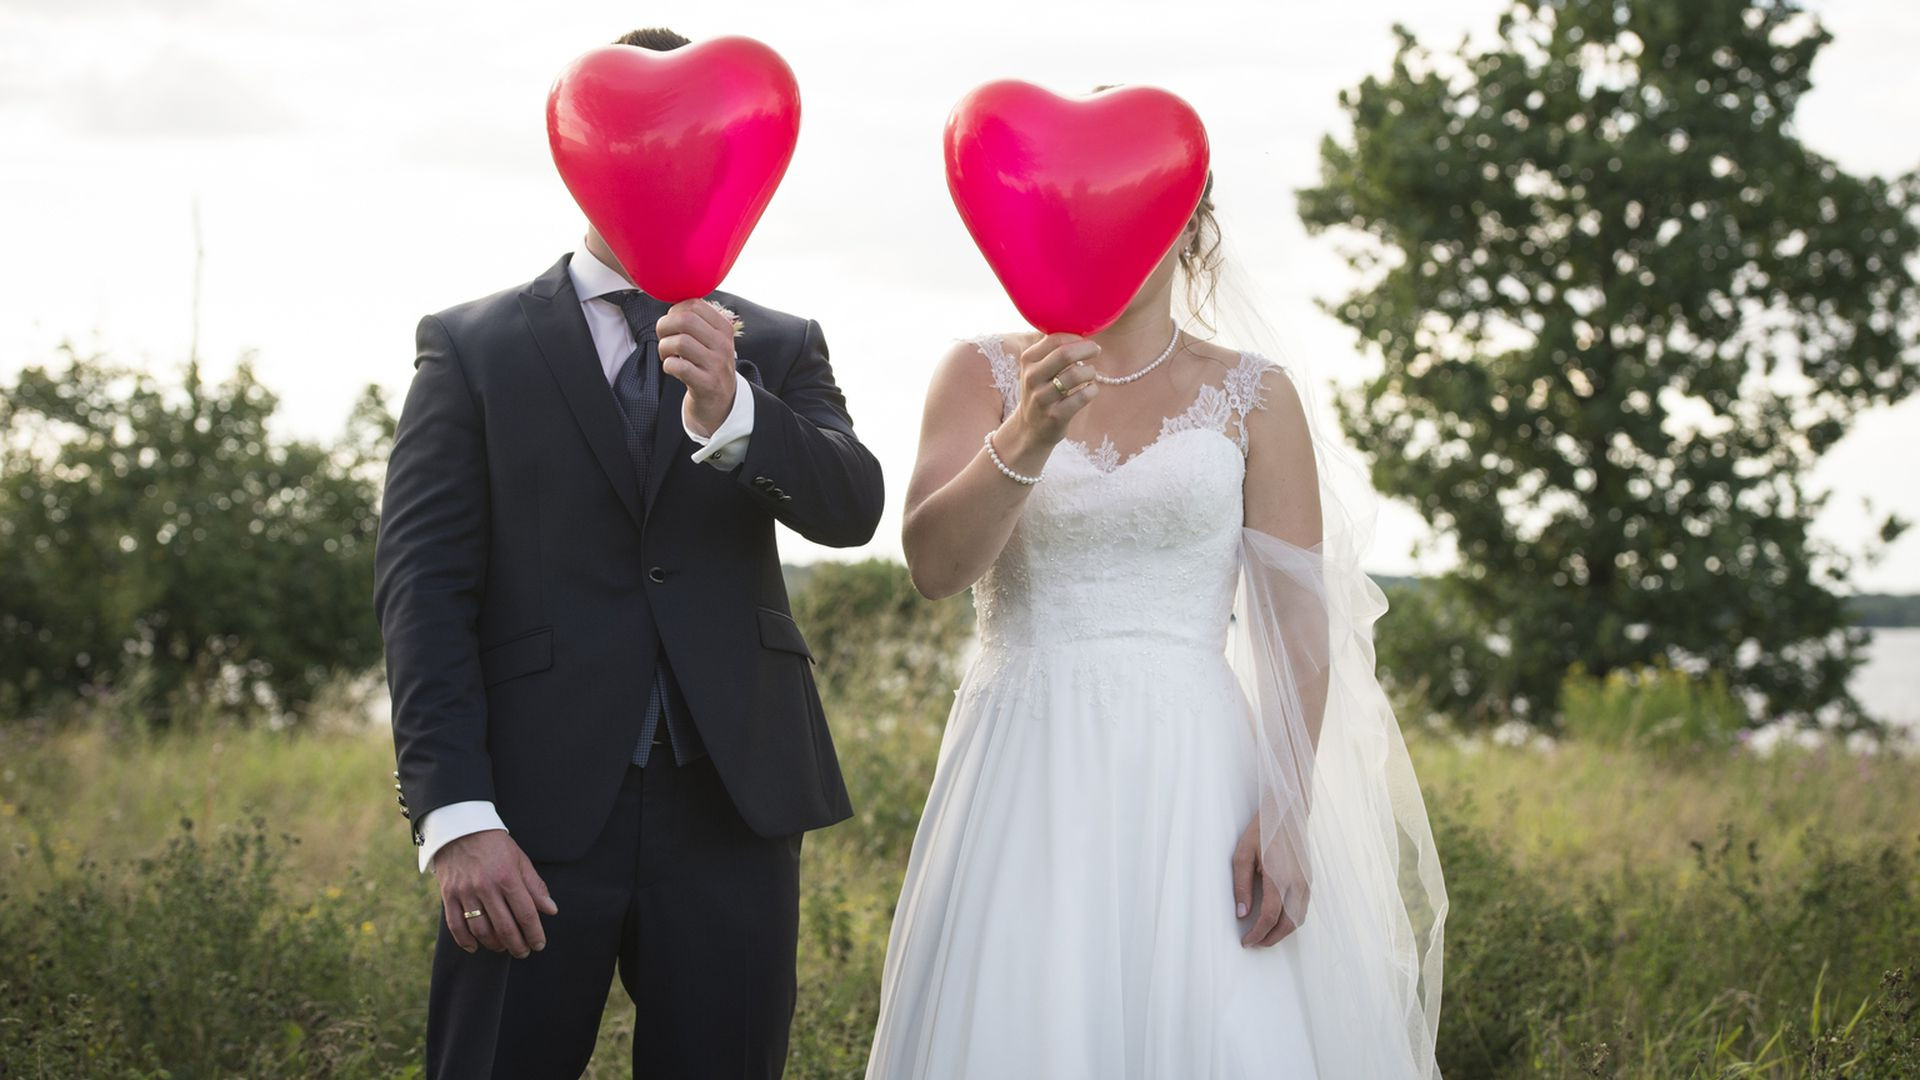 Hochzeit Auf Den Ersten Blick Wer Ist Noch Zusammen 2019
 Hochzeit Auf Den Ersten Blick Paare Sandra Und Sebastian 2018